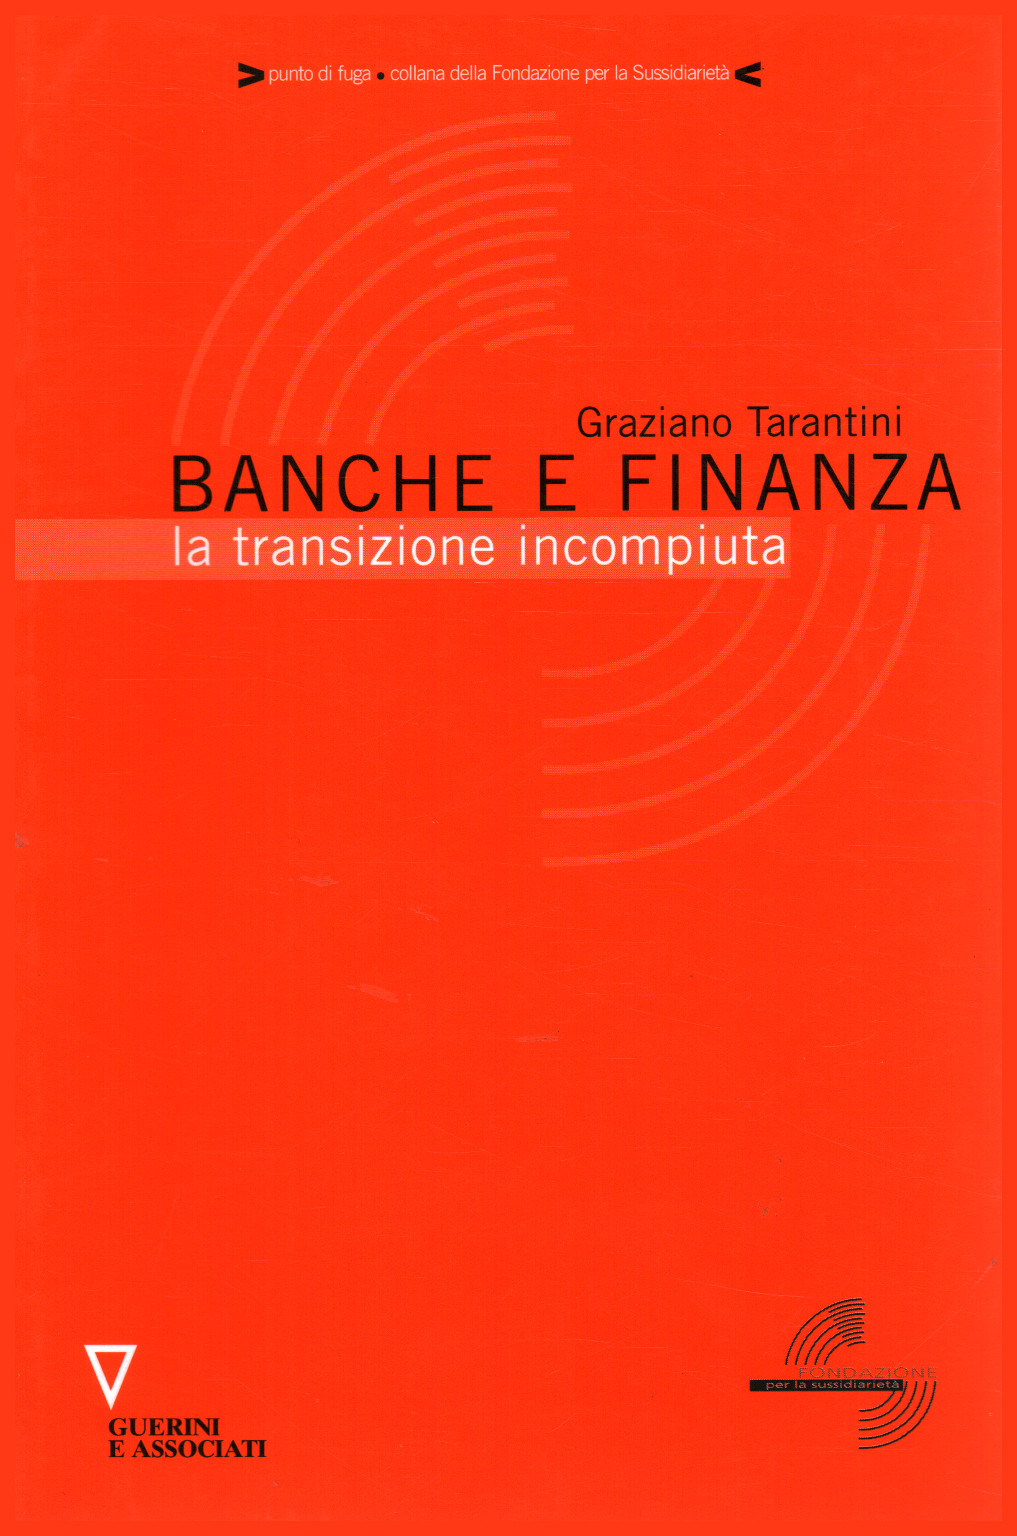 Banche e finanza, Graziano Tarantini